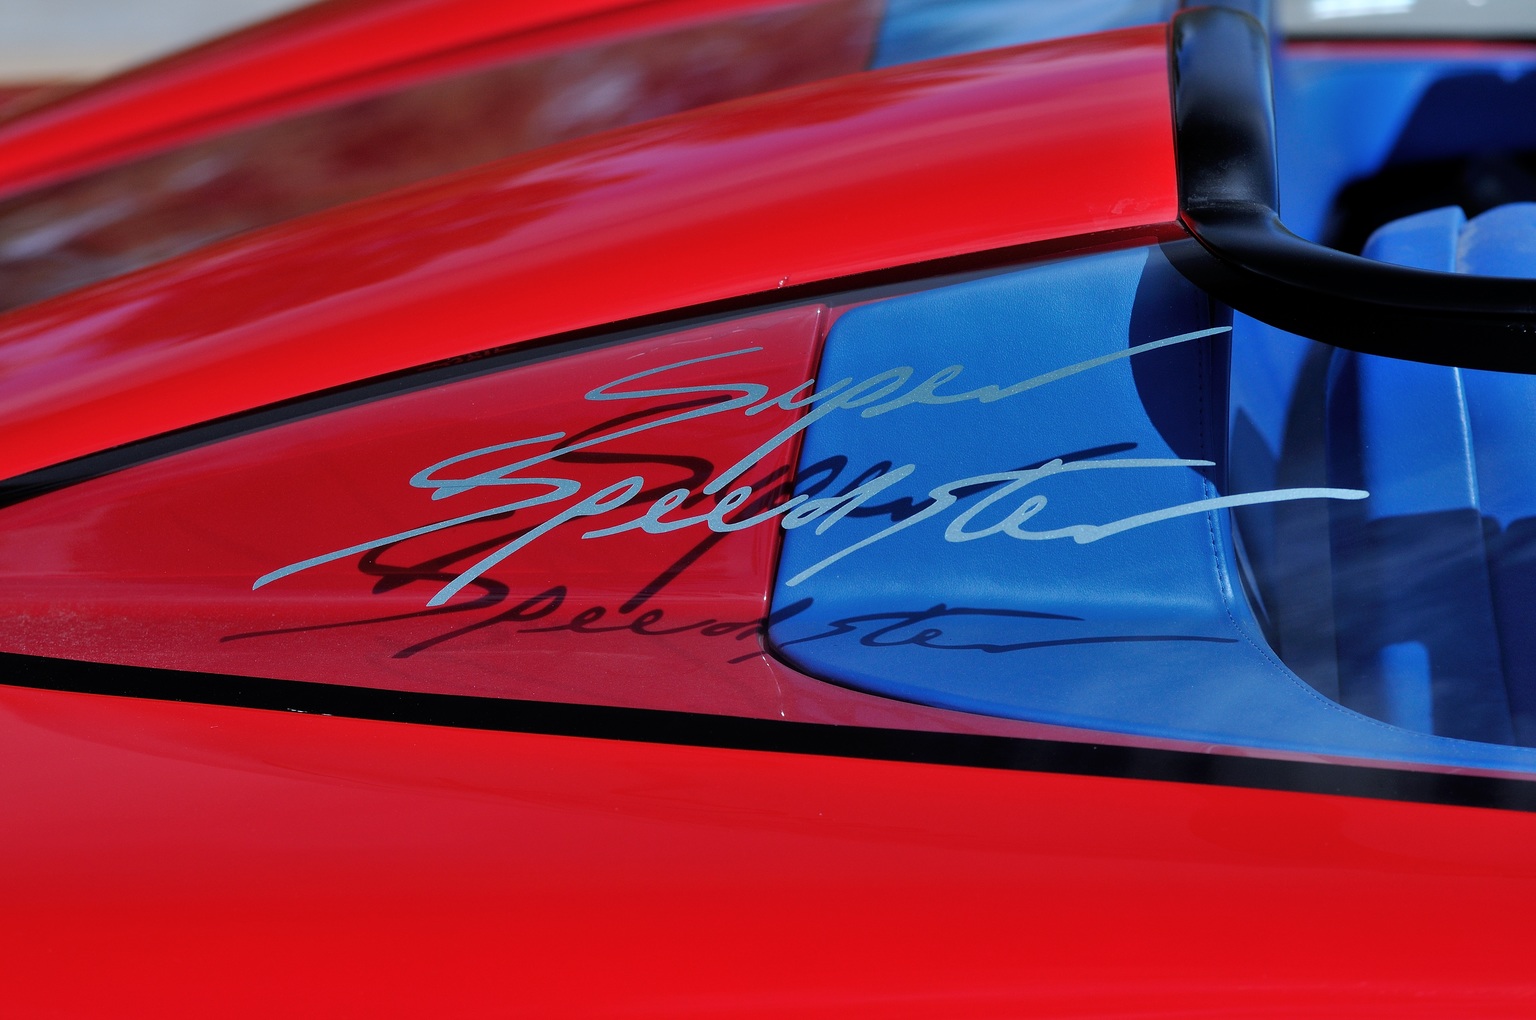 1990 Callaway Corvette Super Speedster